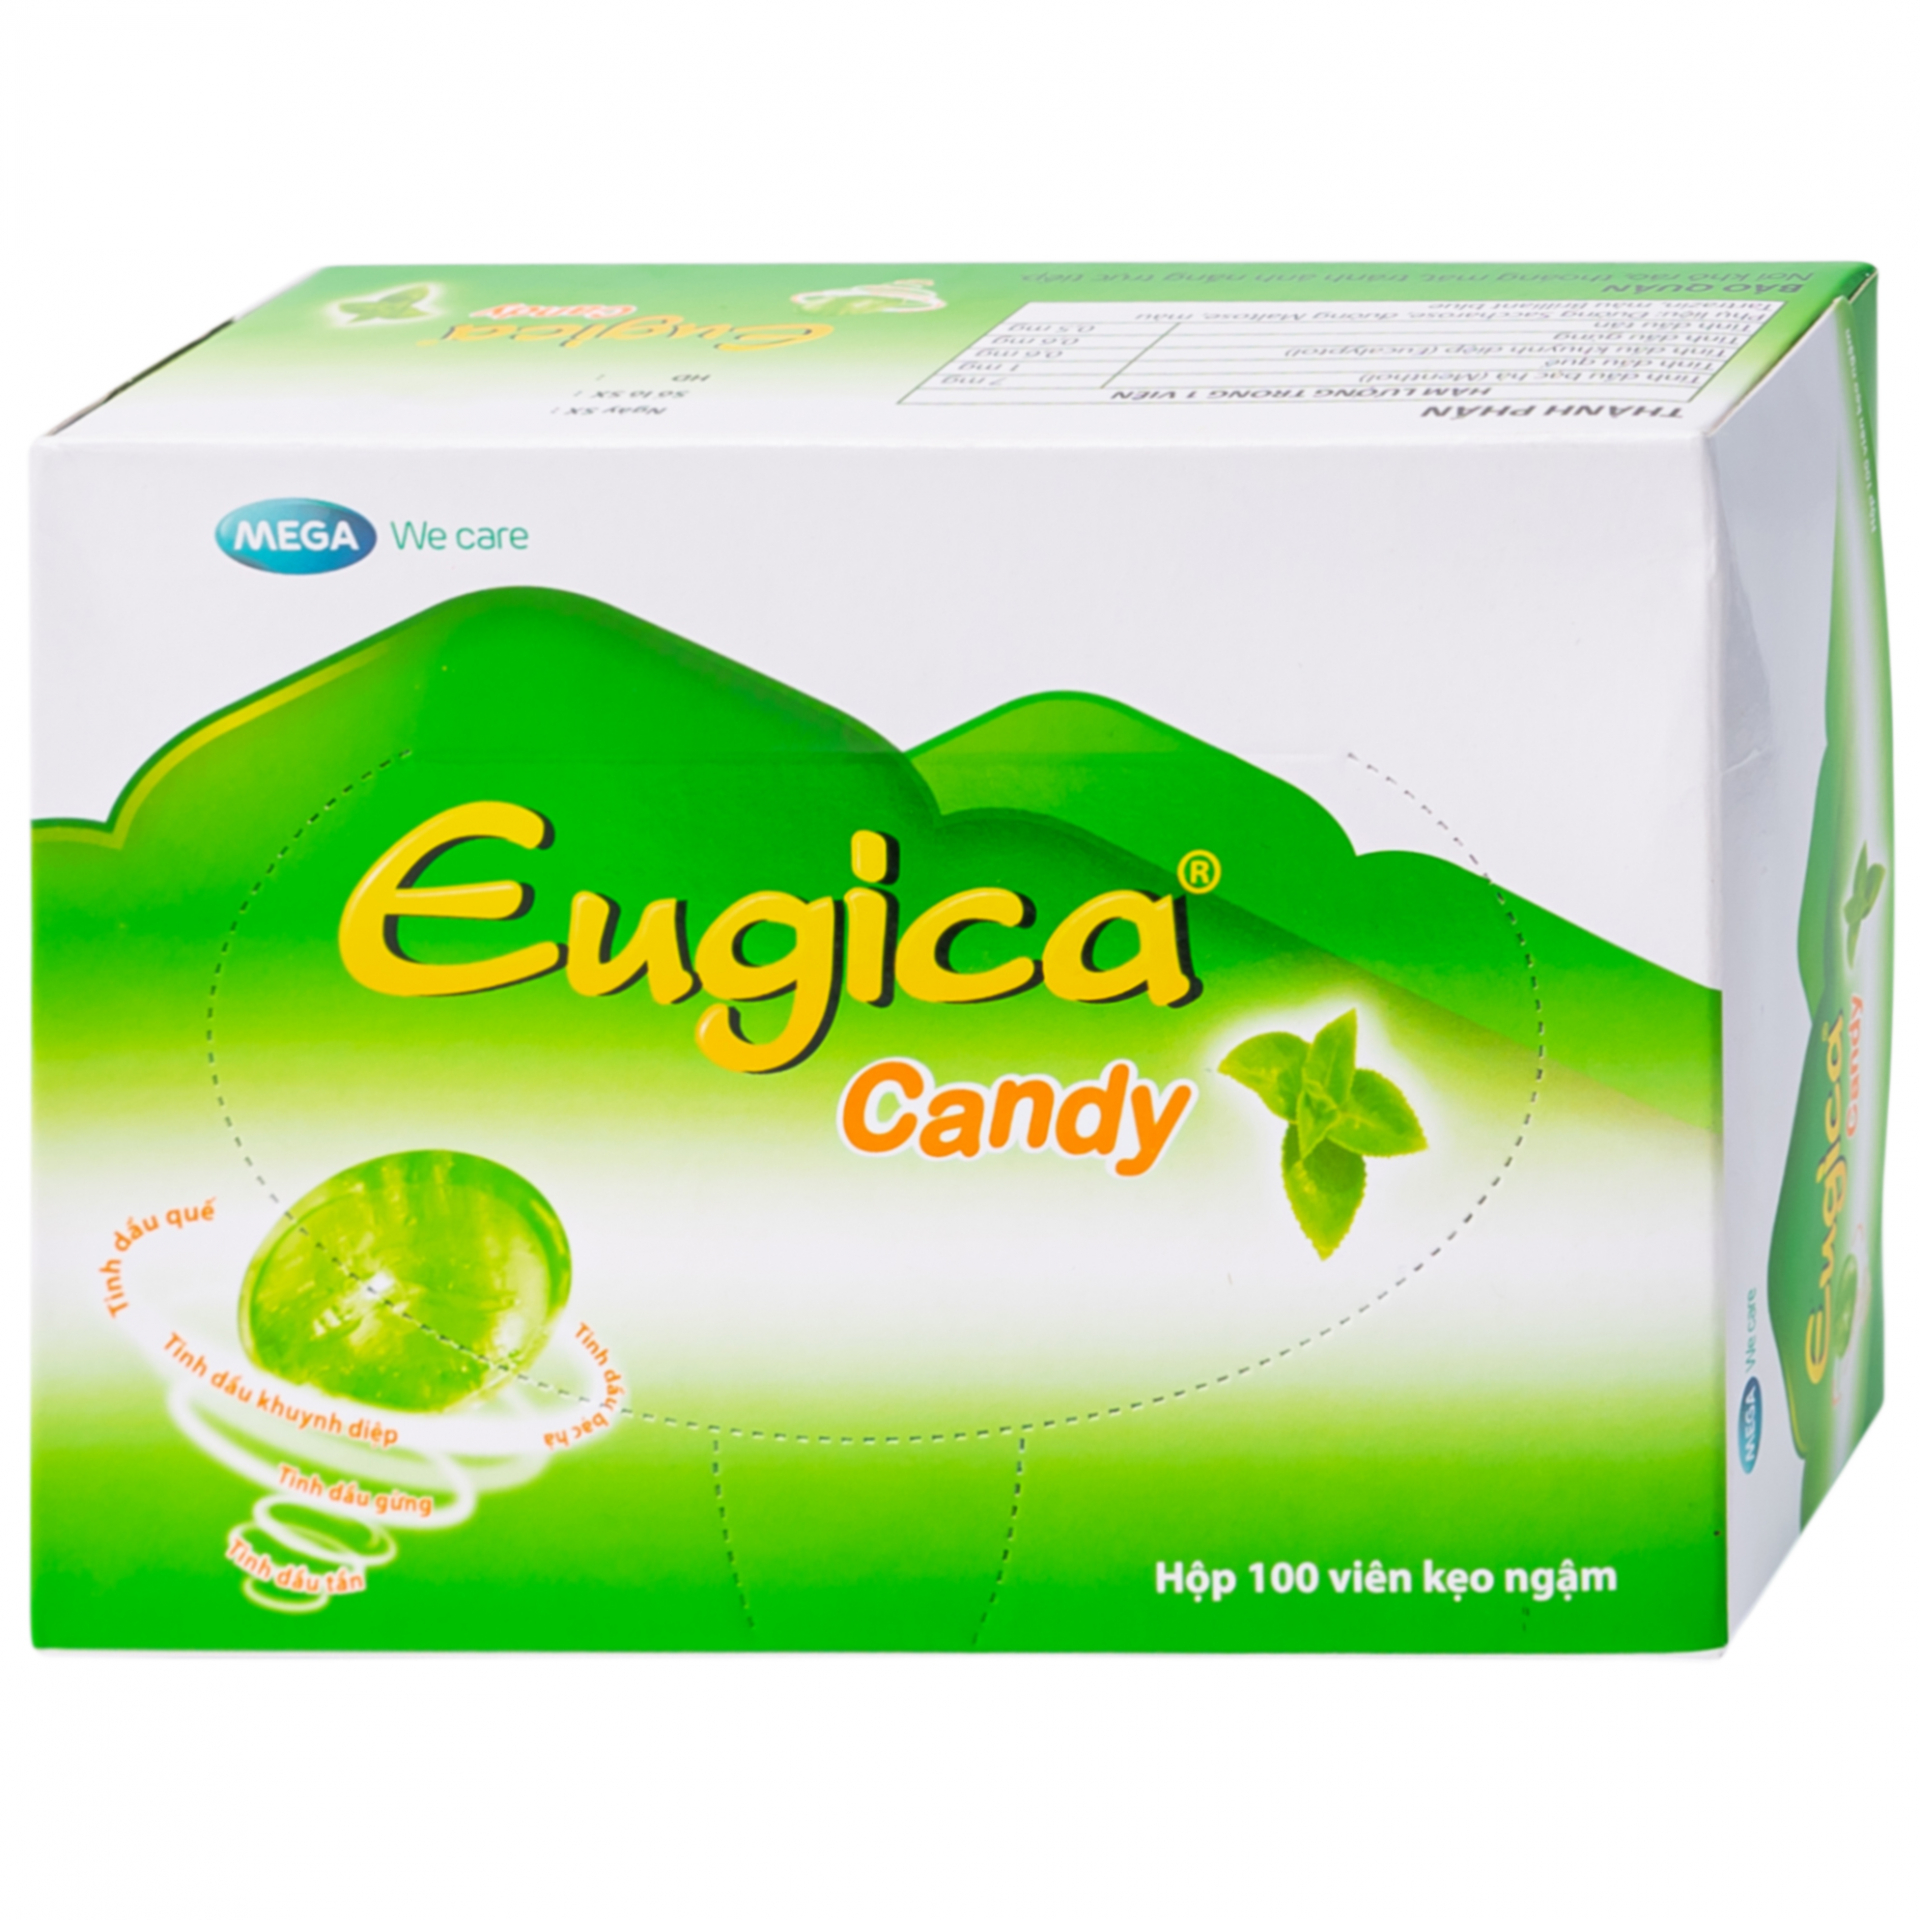 Eugica Candy có công dụng gì?
